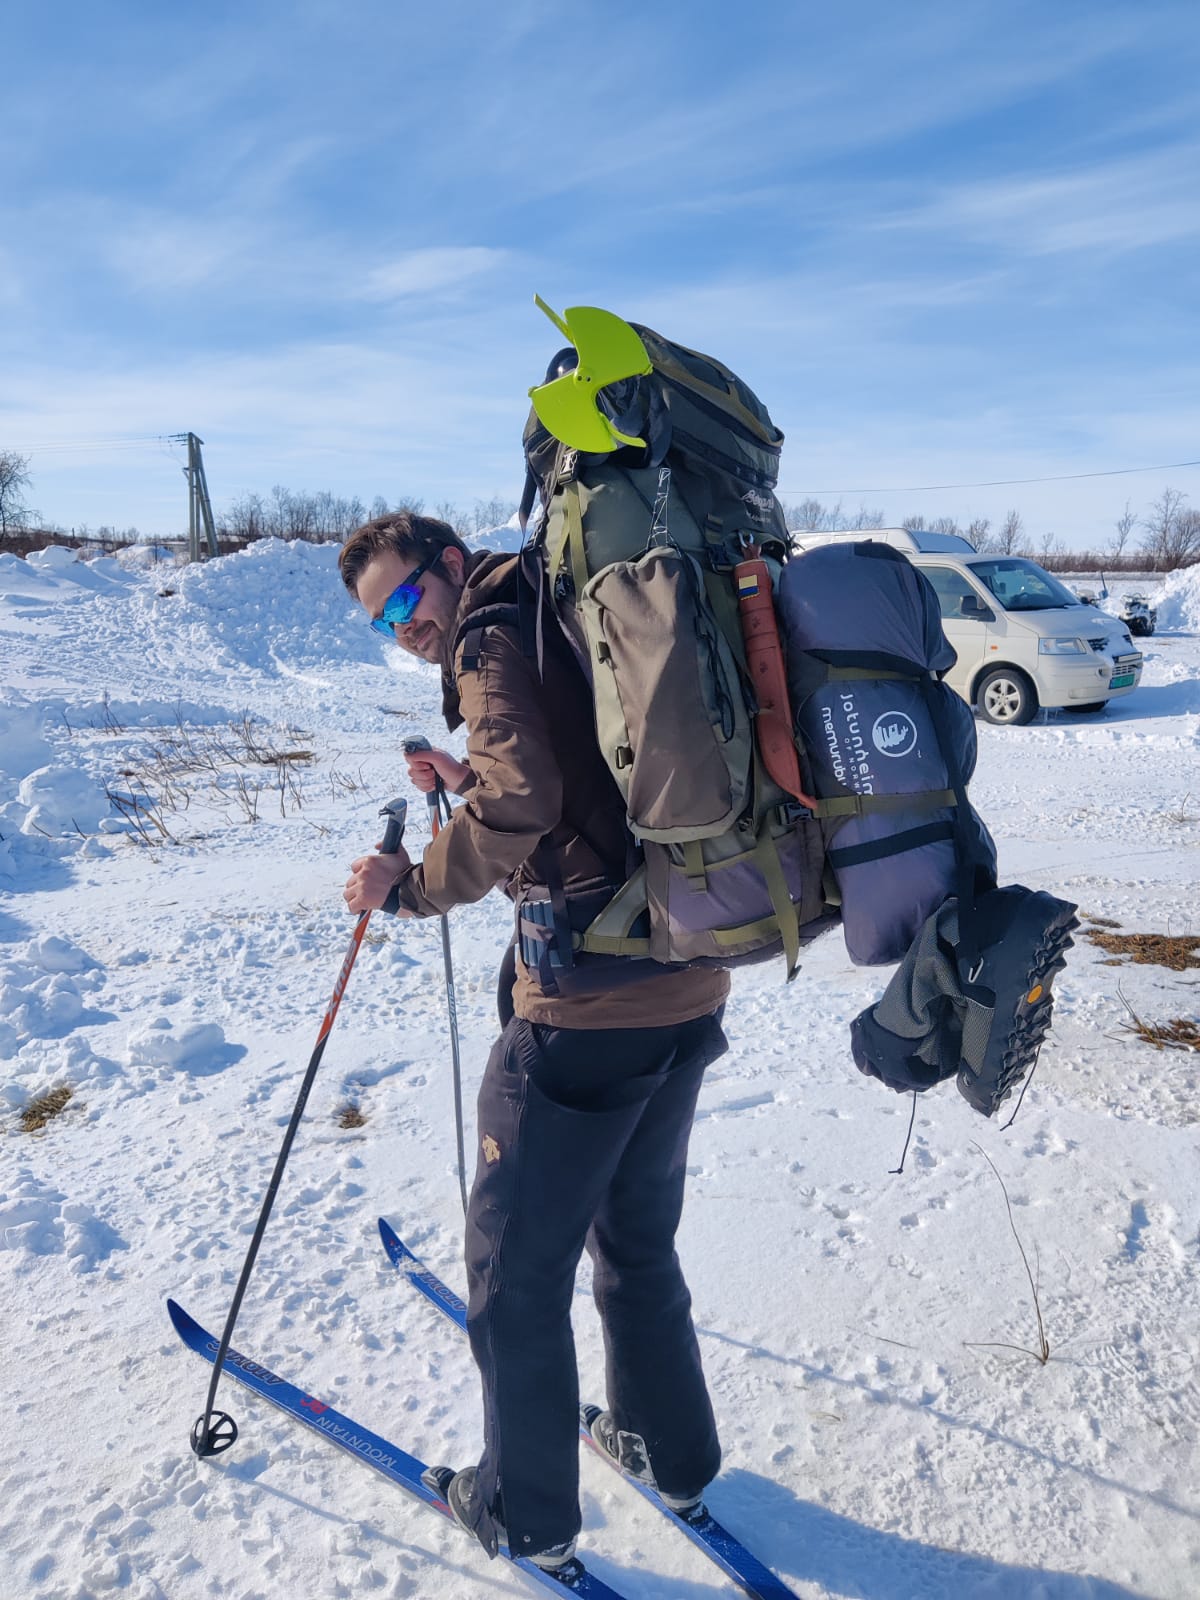 Bild: Marcus Madsen mit 50 Kilogramm Rucksack auf Ski